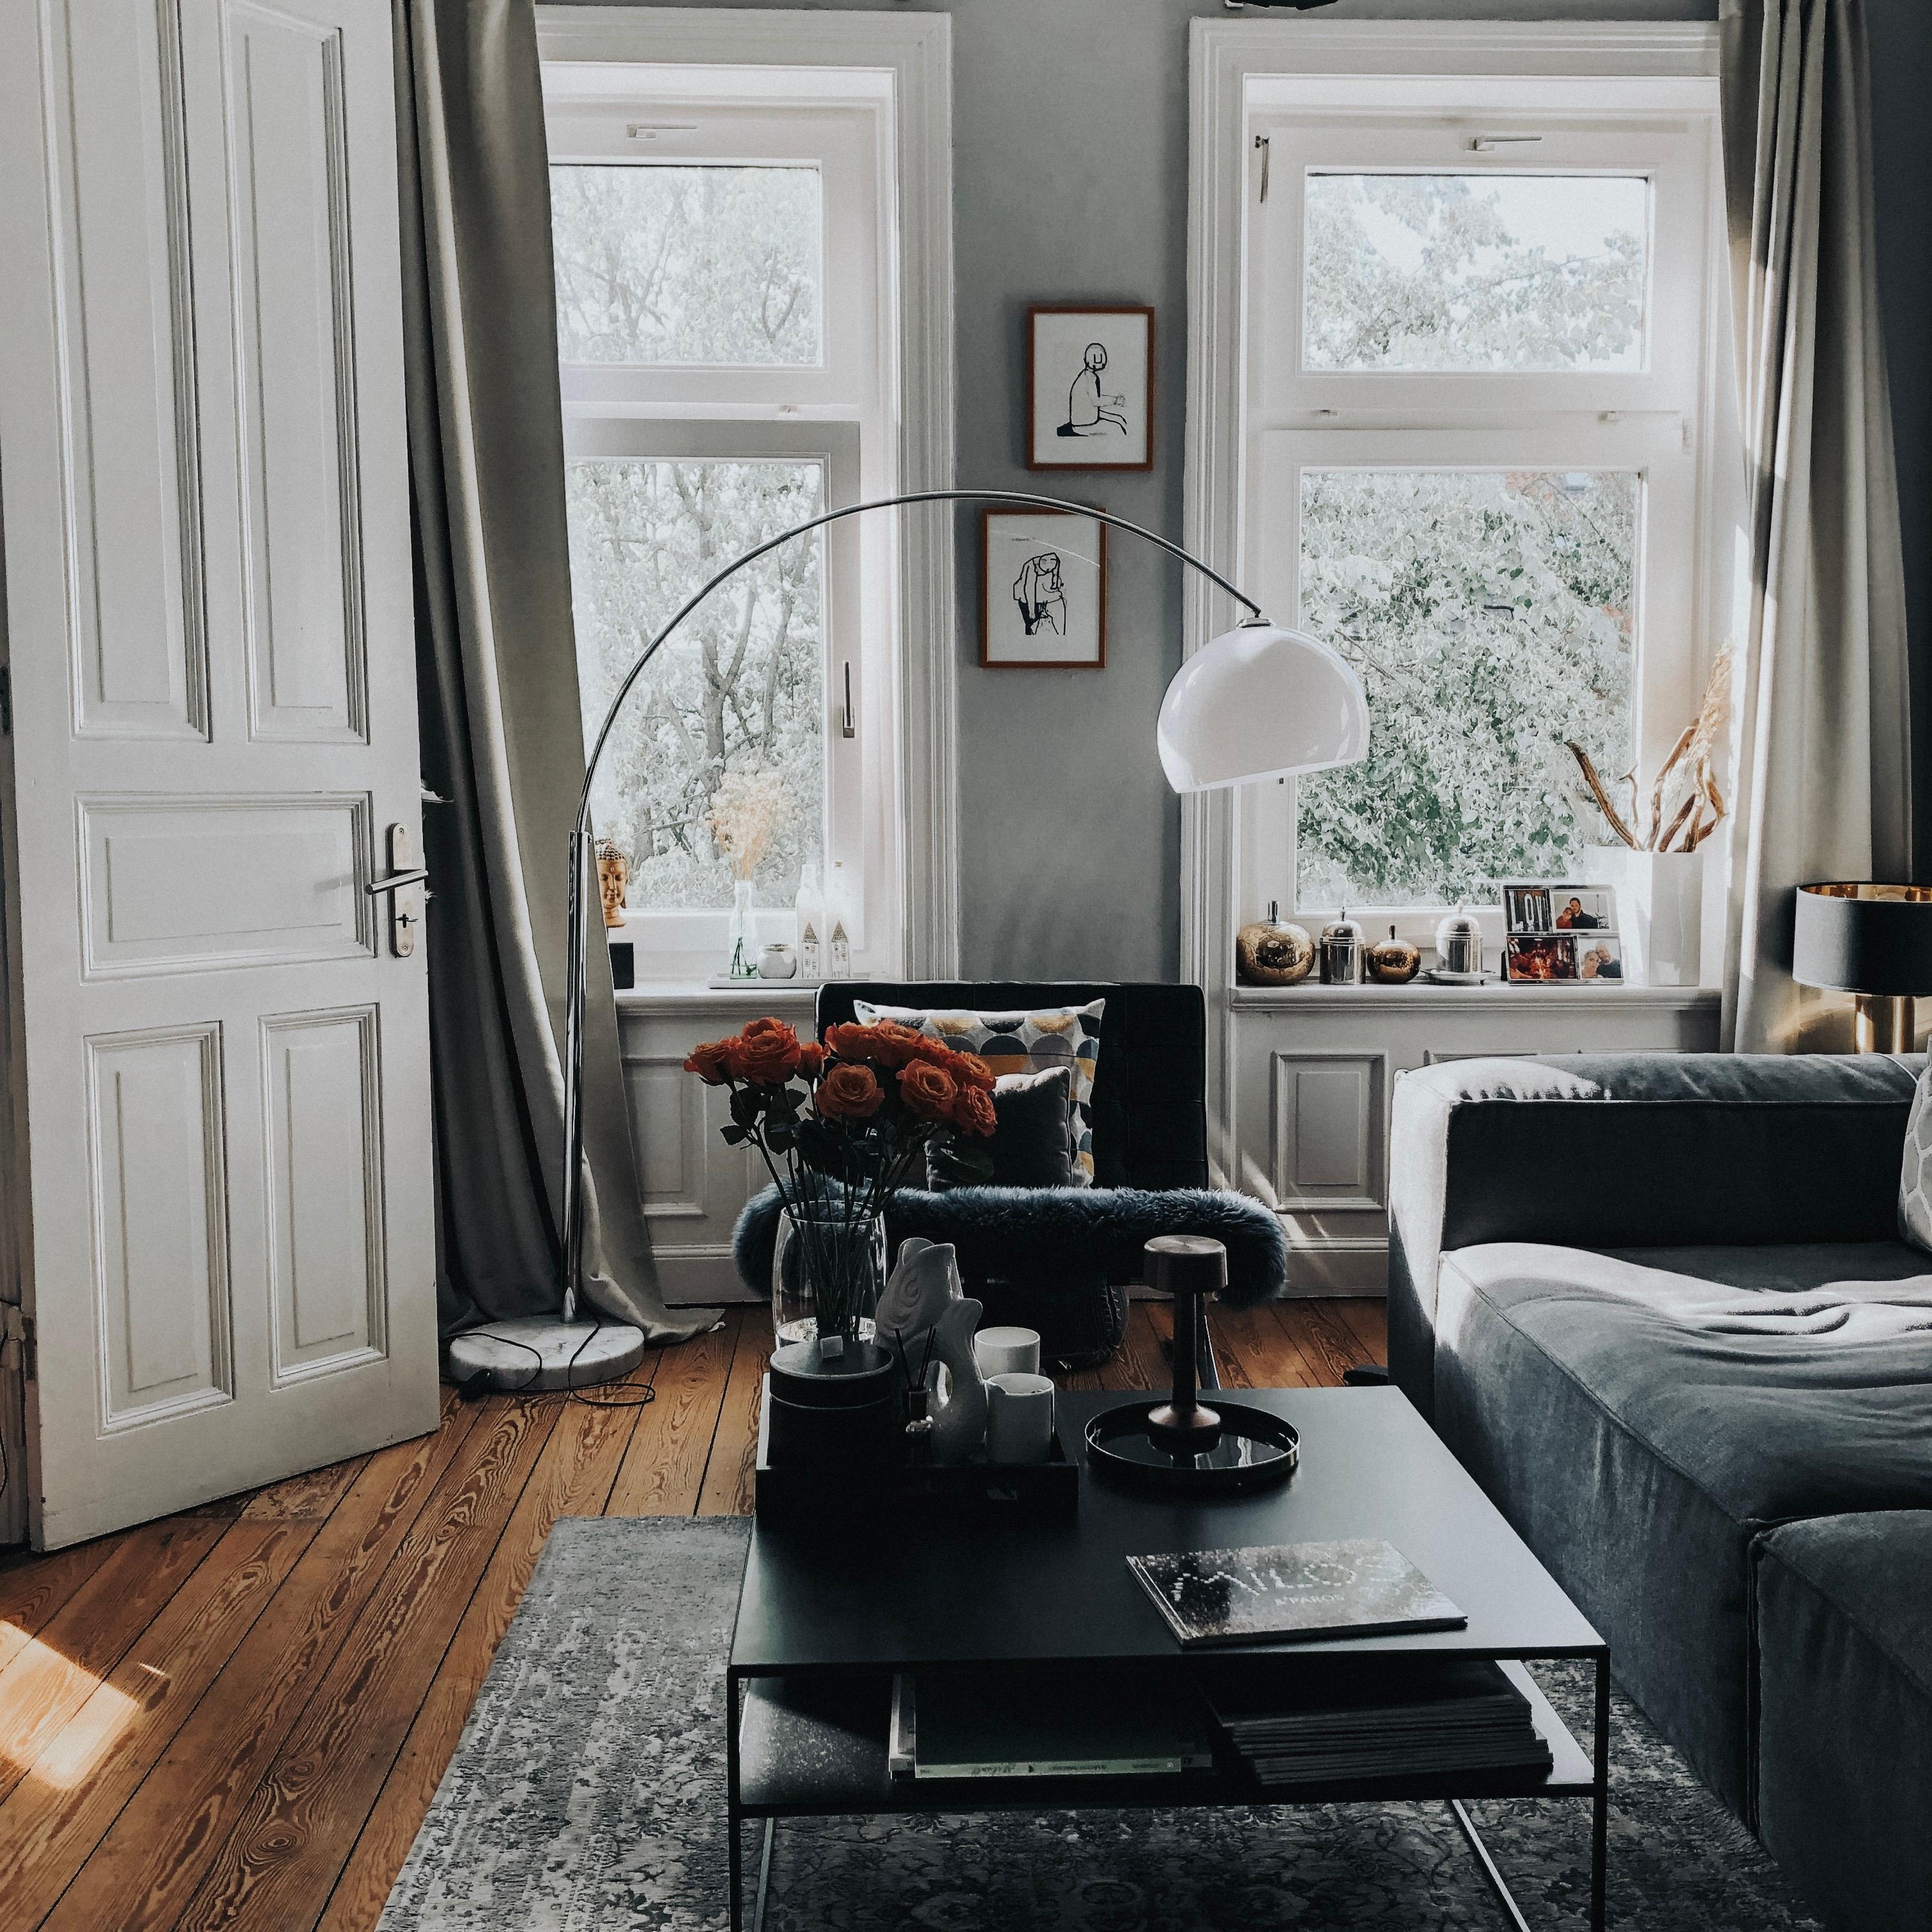 Kühler Altbau bei Sommerhitze #interior #couchstyle #livingroom #couchstyle #dekor #design #danishdesign #altbau #wozi